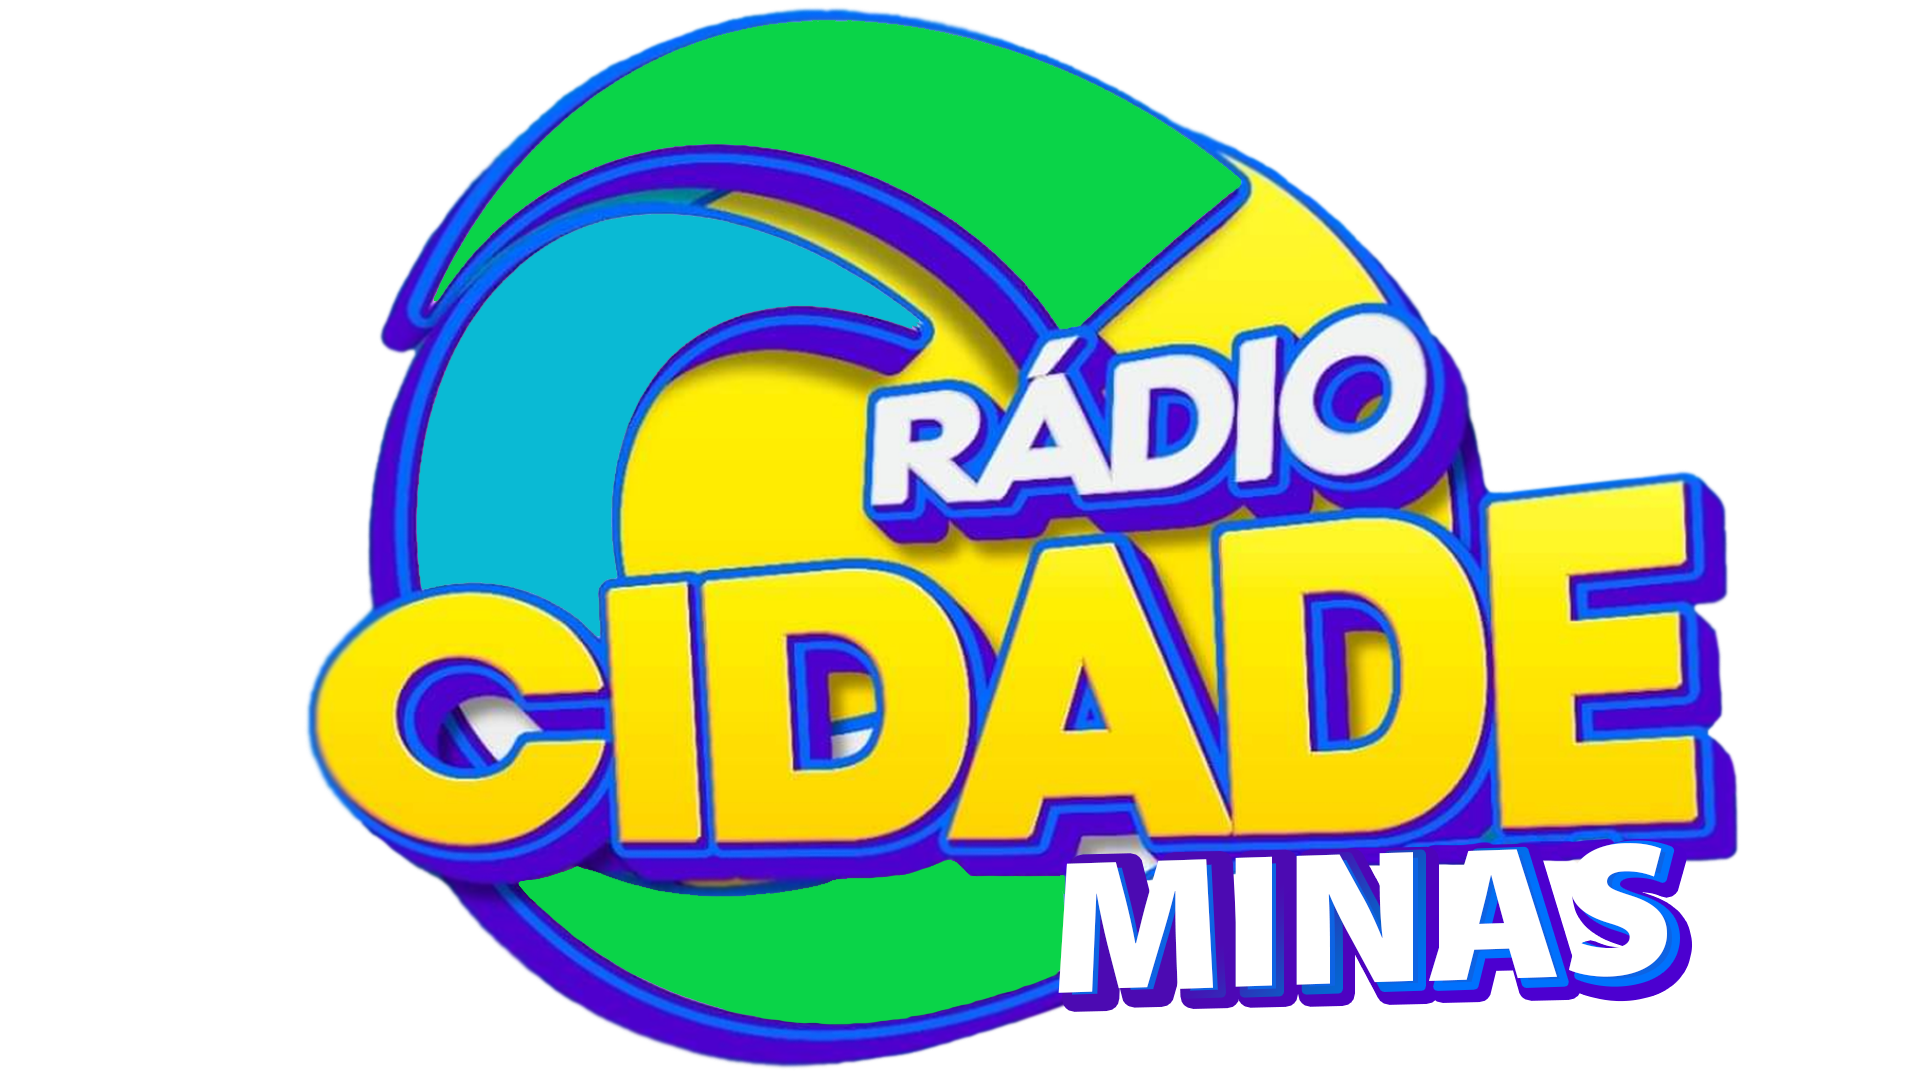 Radio Cidade Minas